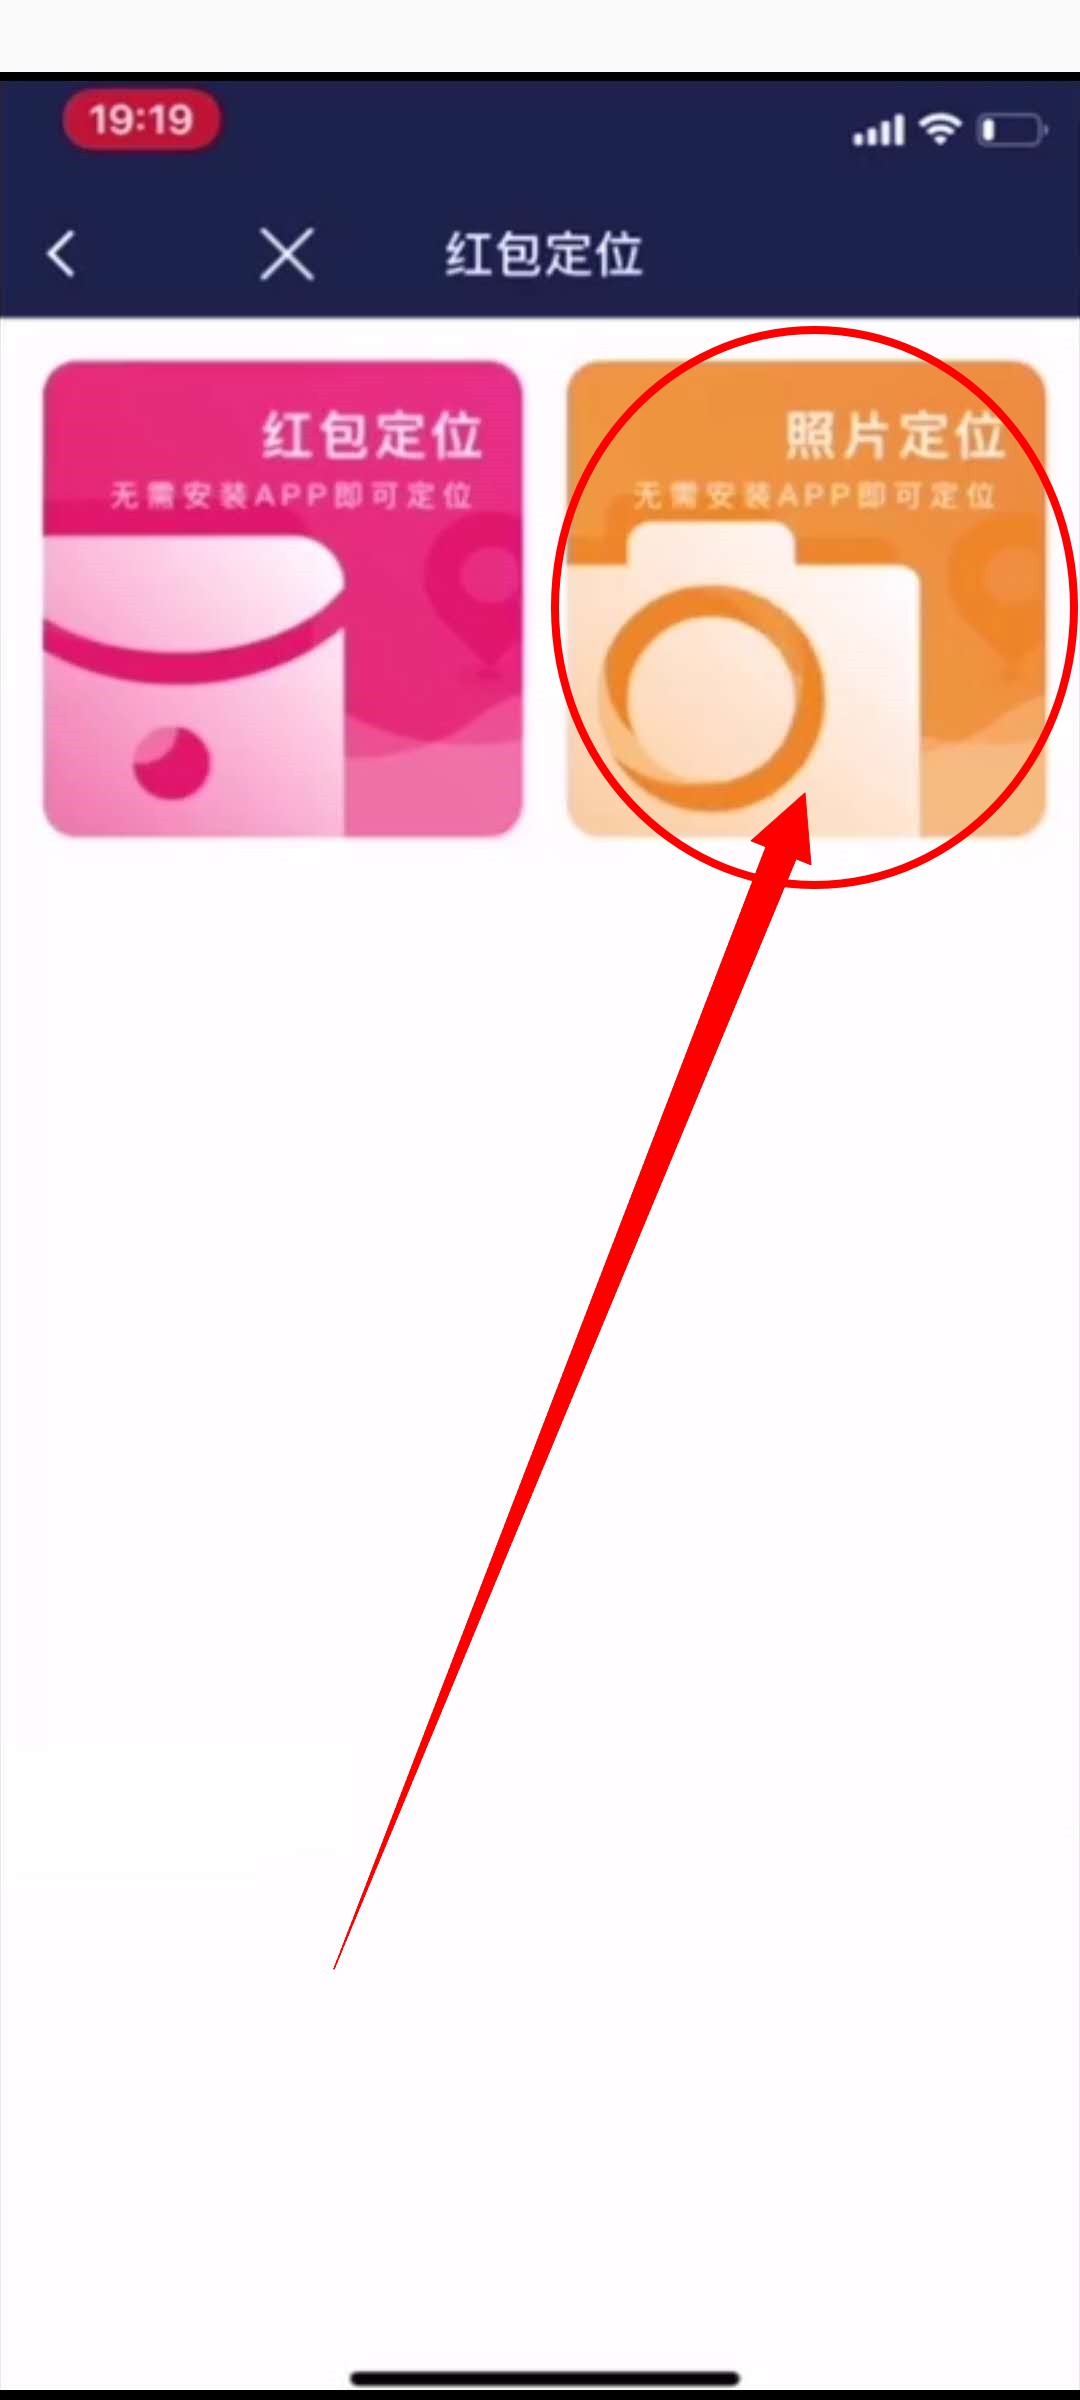 行迹定位怎么通过红包照片定位对方